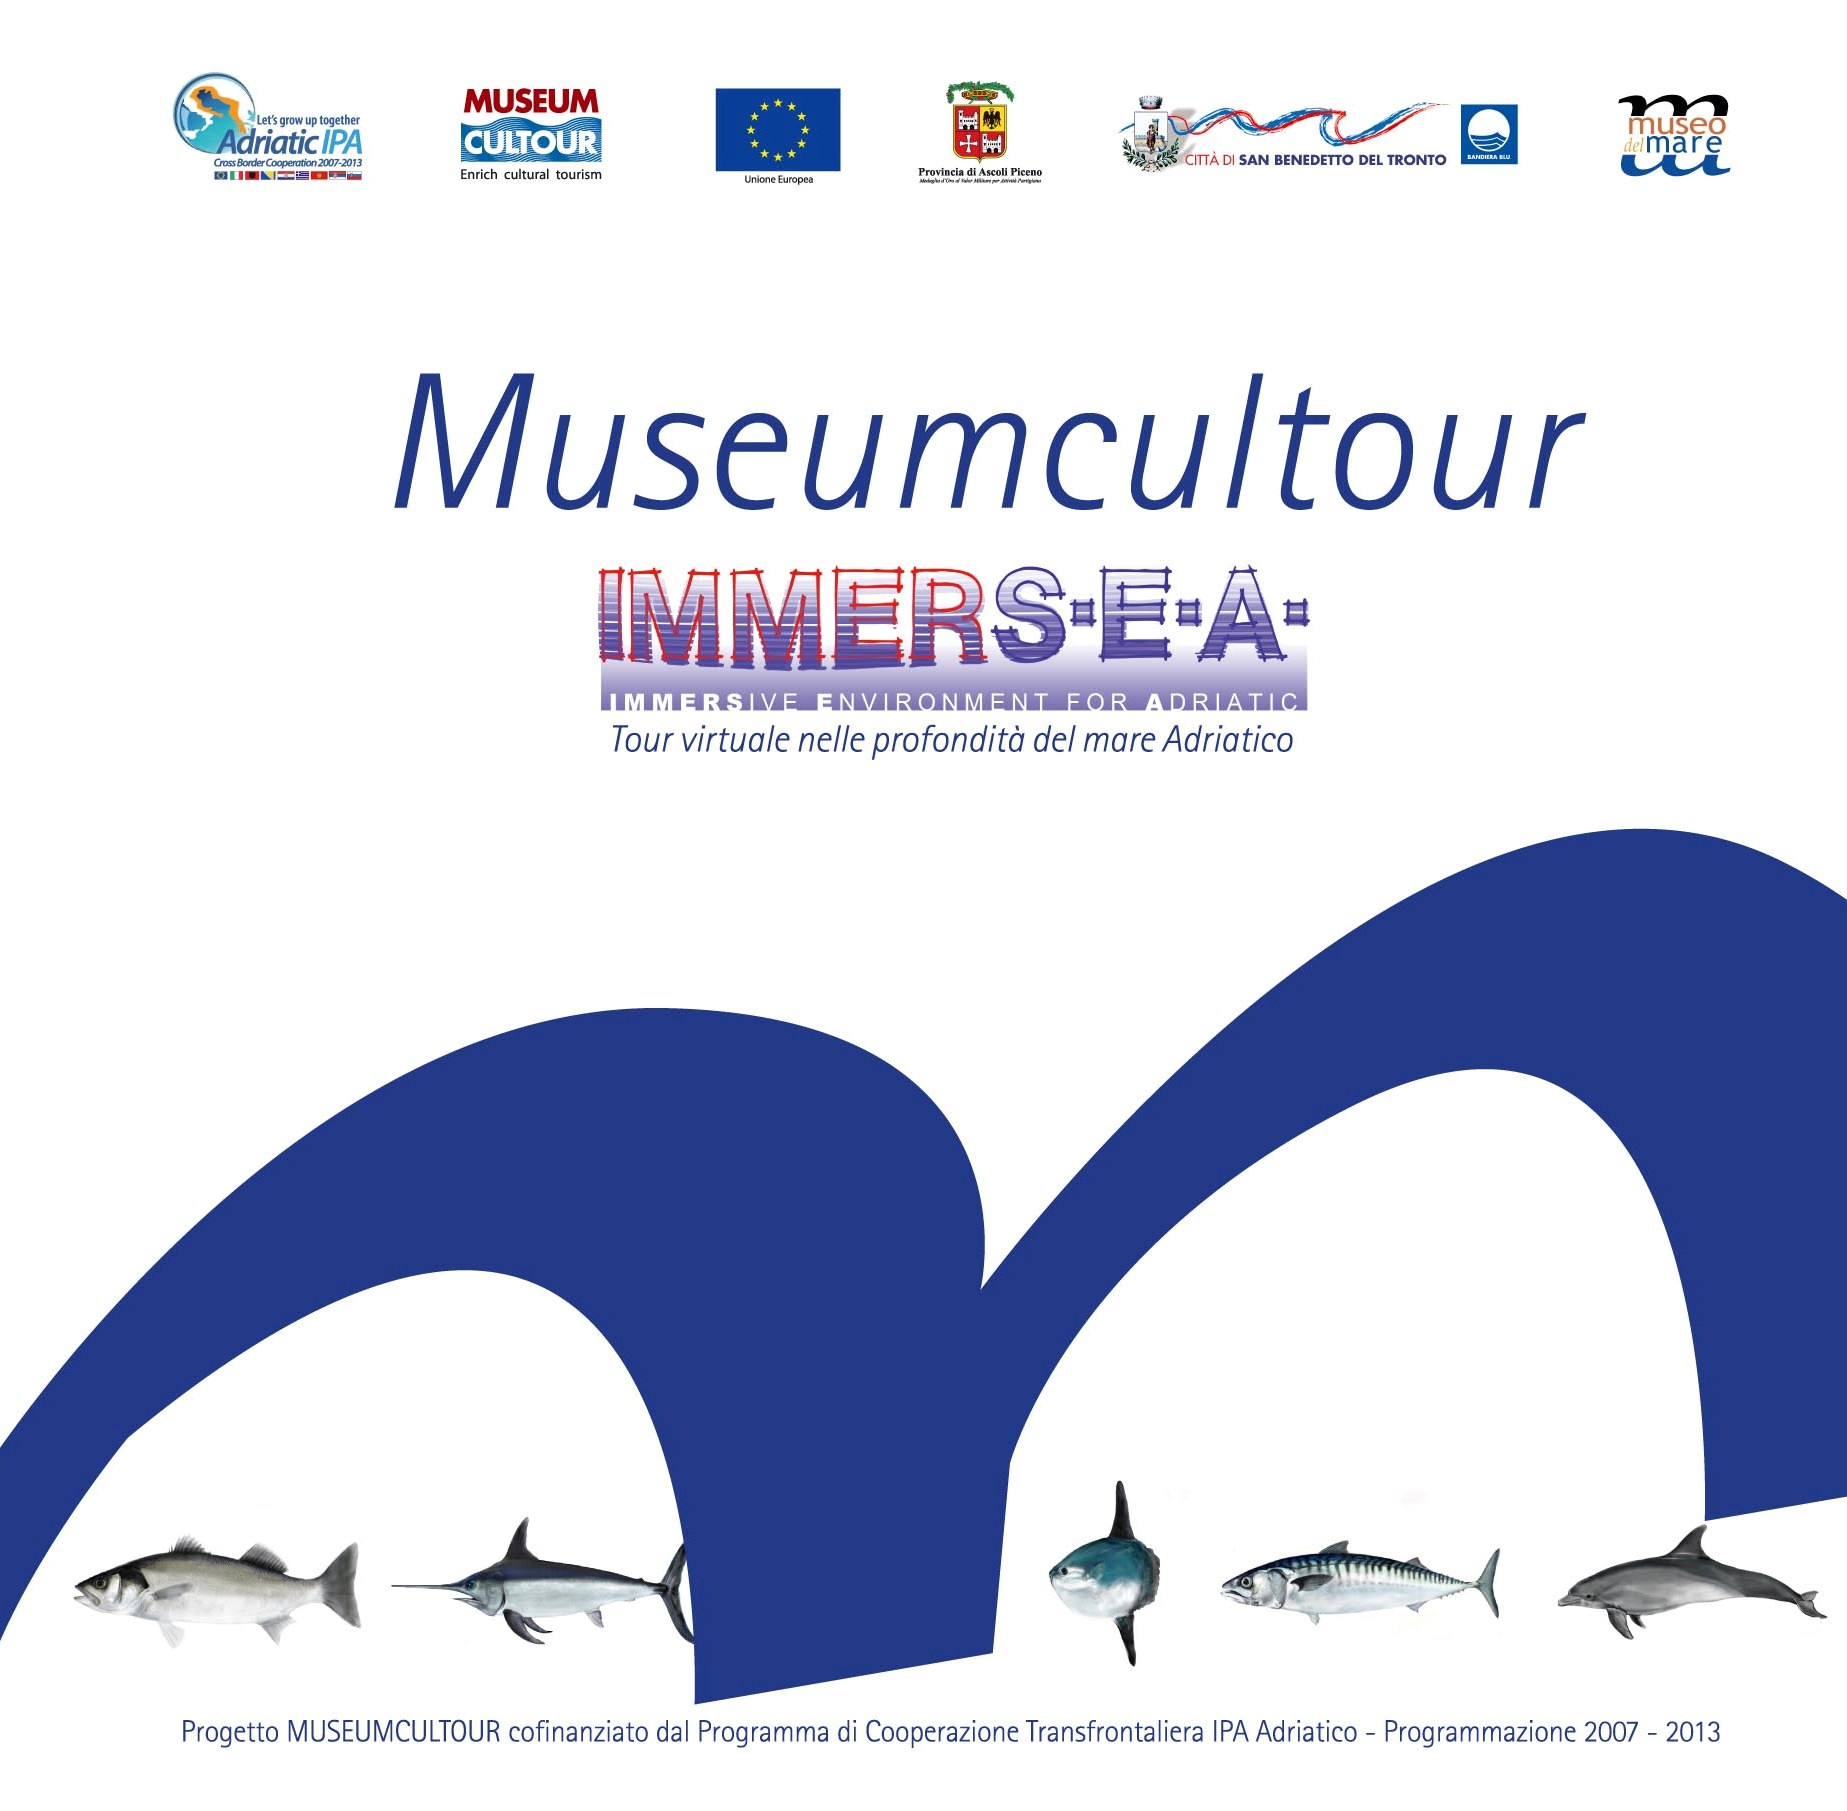 Sala virtuale stereoscopica: tour virtuale nelle profondità del mare Adriatico